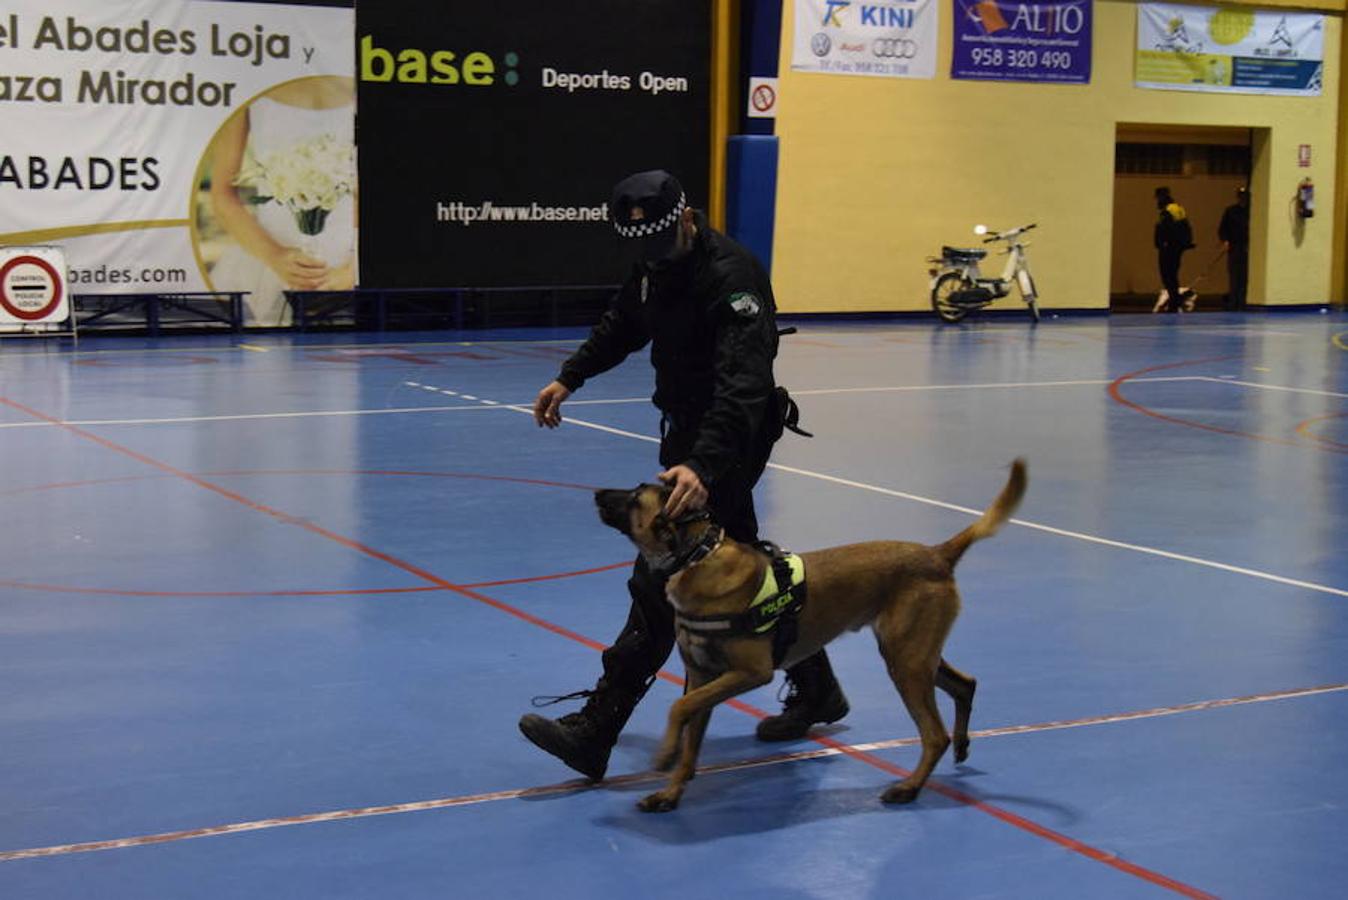 Perro y policía: el equipo perfecto